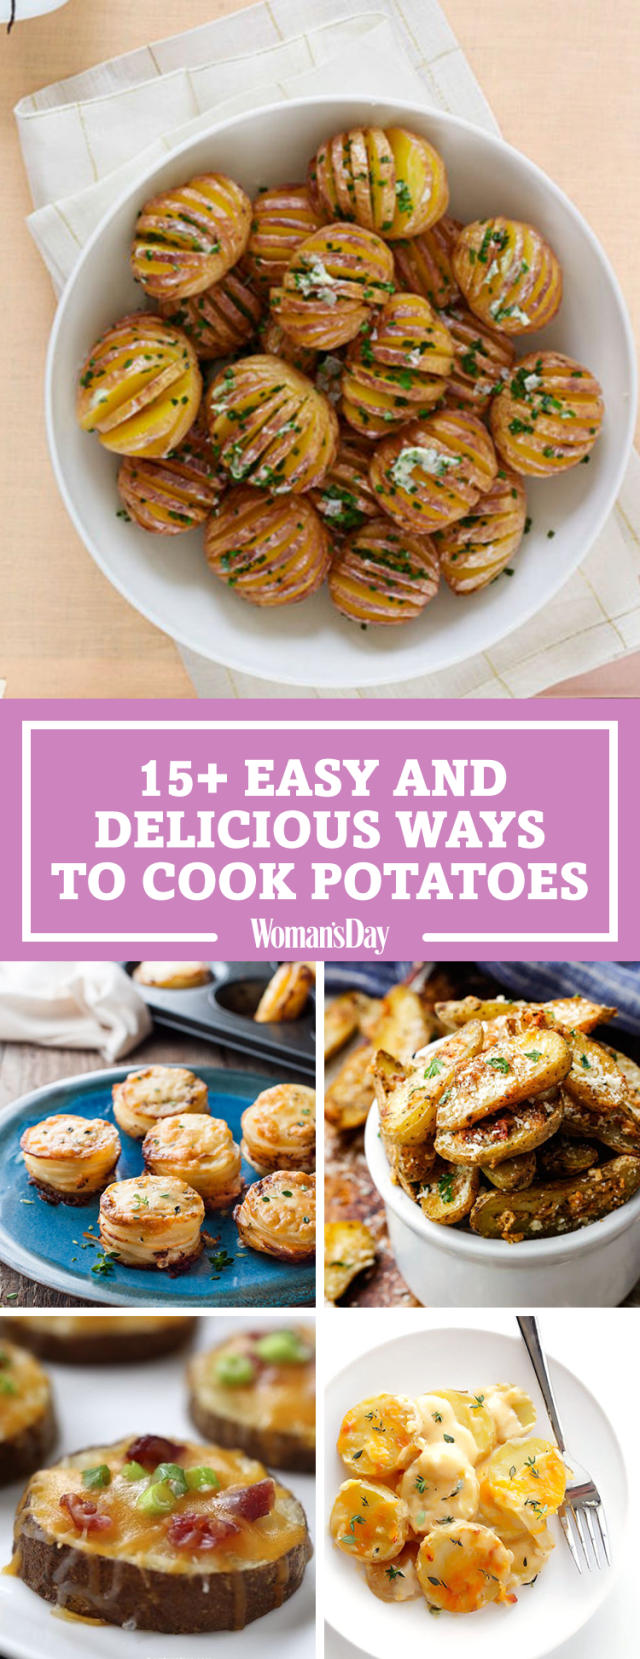 19 Easy Potato Recipes - How to Cook Potatoes